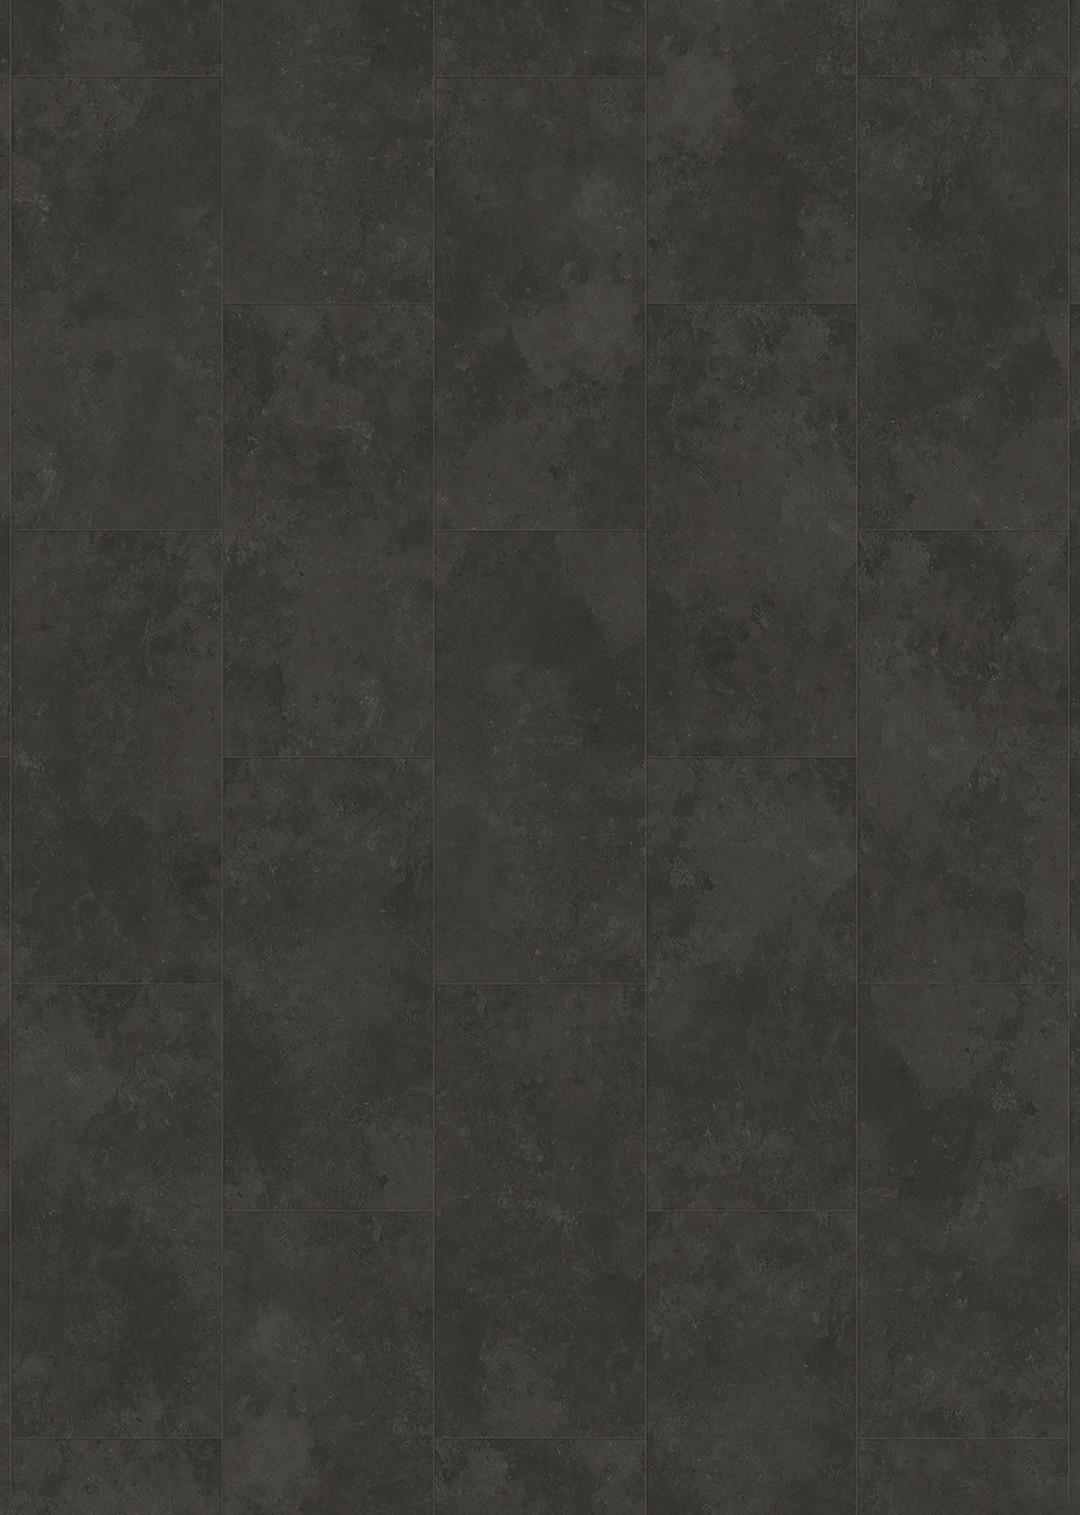 Laminatboden Stein schwarz B/S: ca. 28x0,8 cm